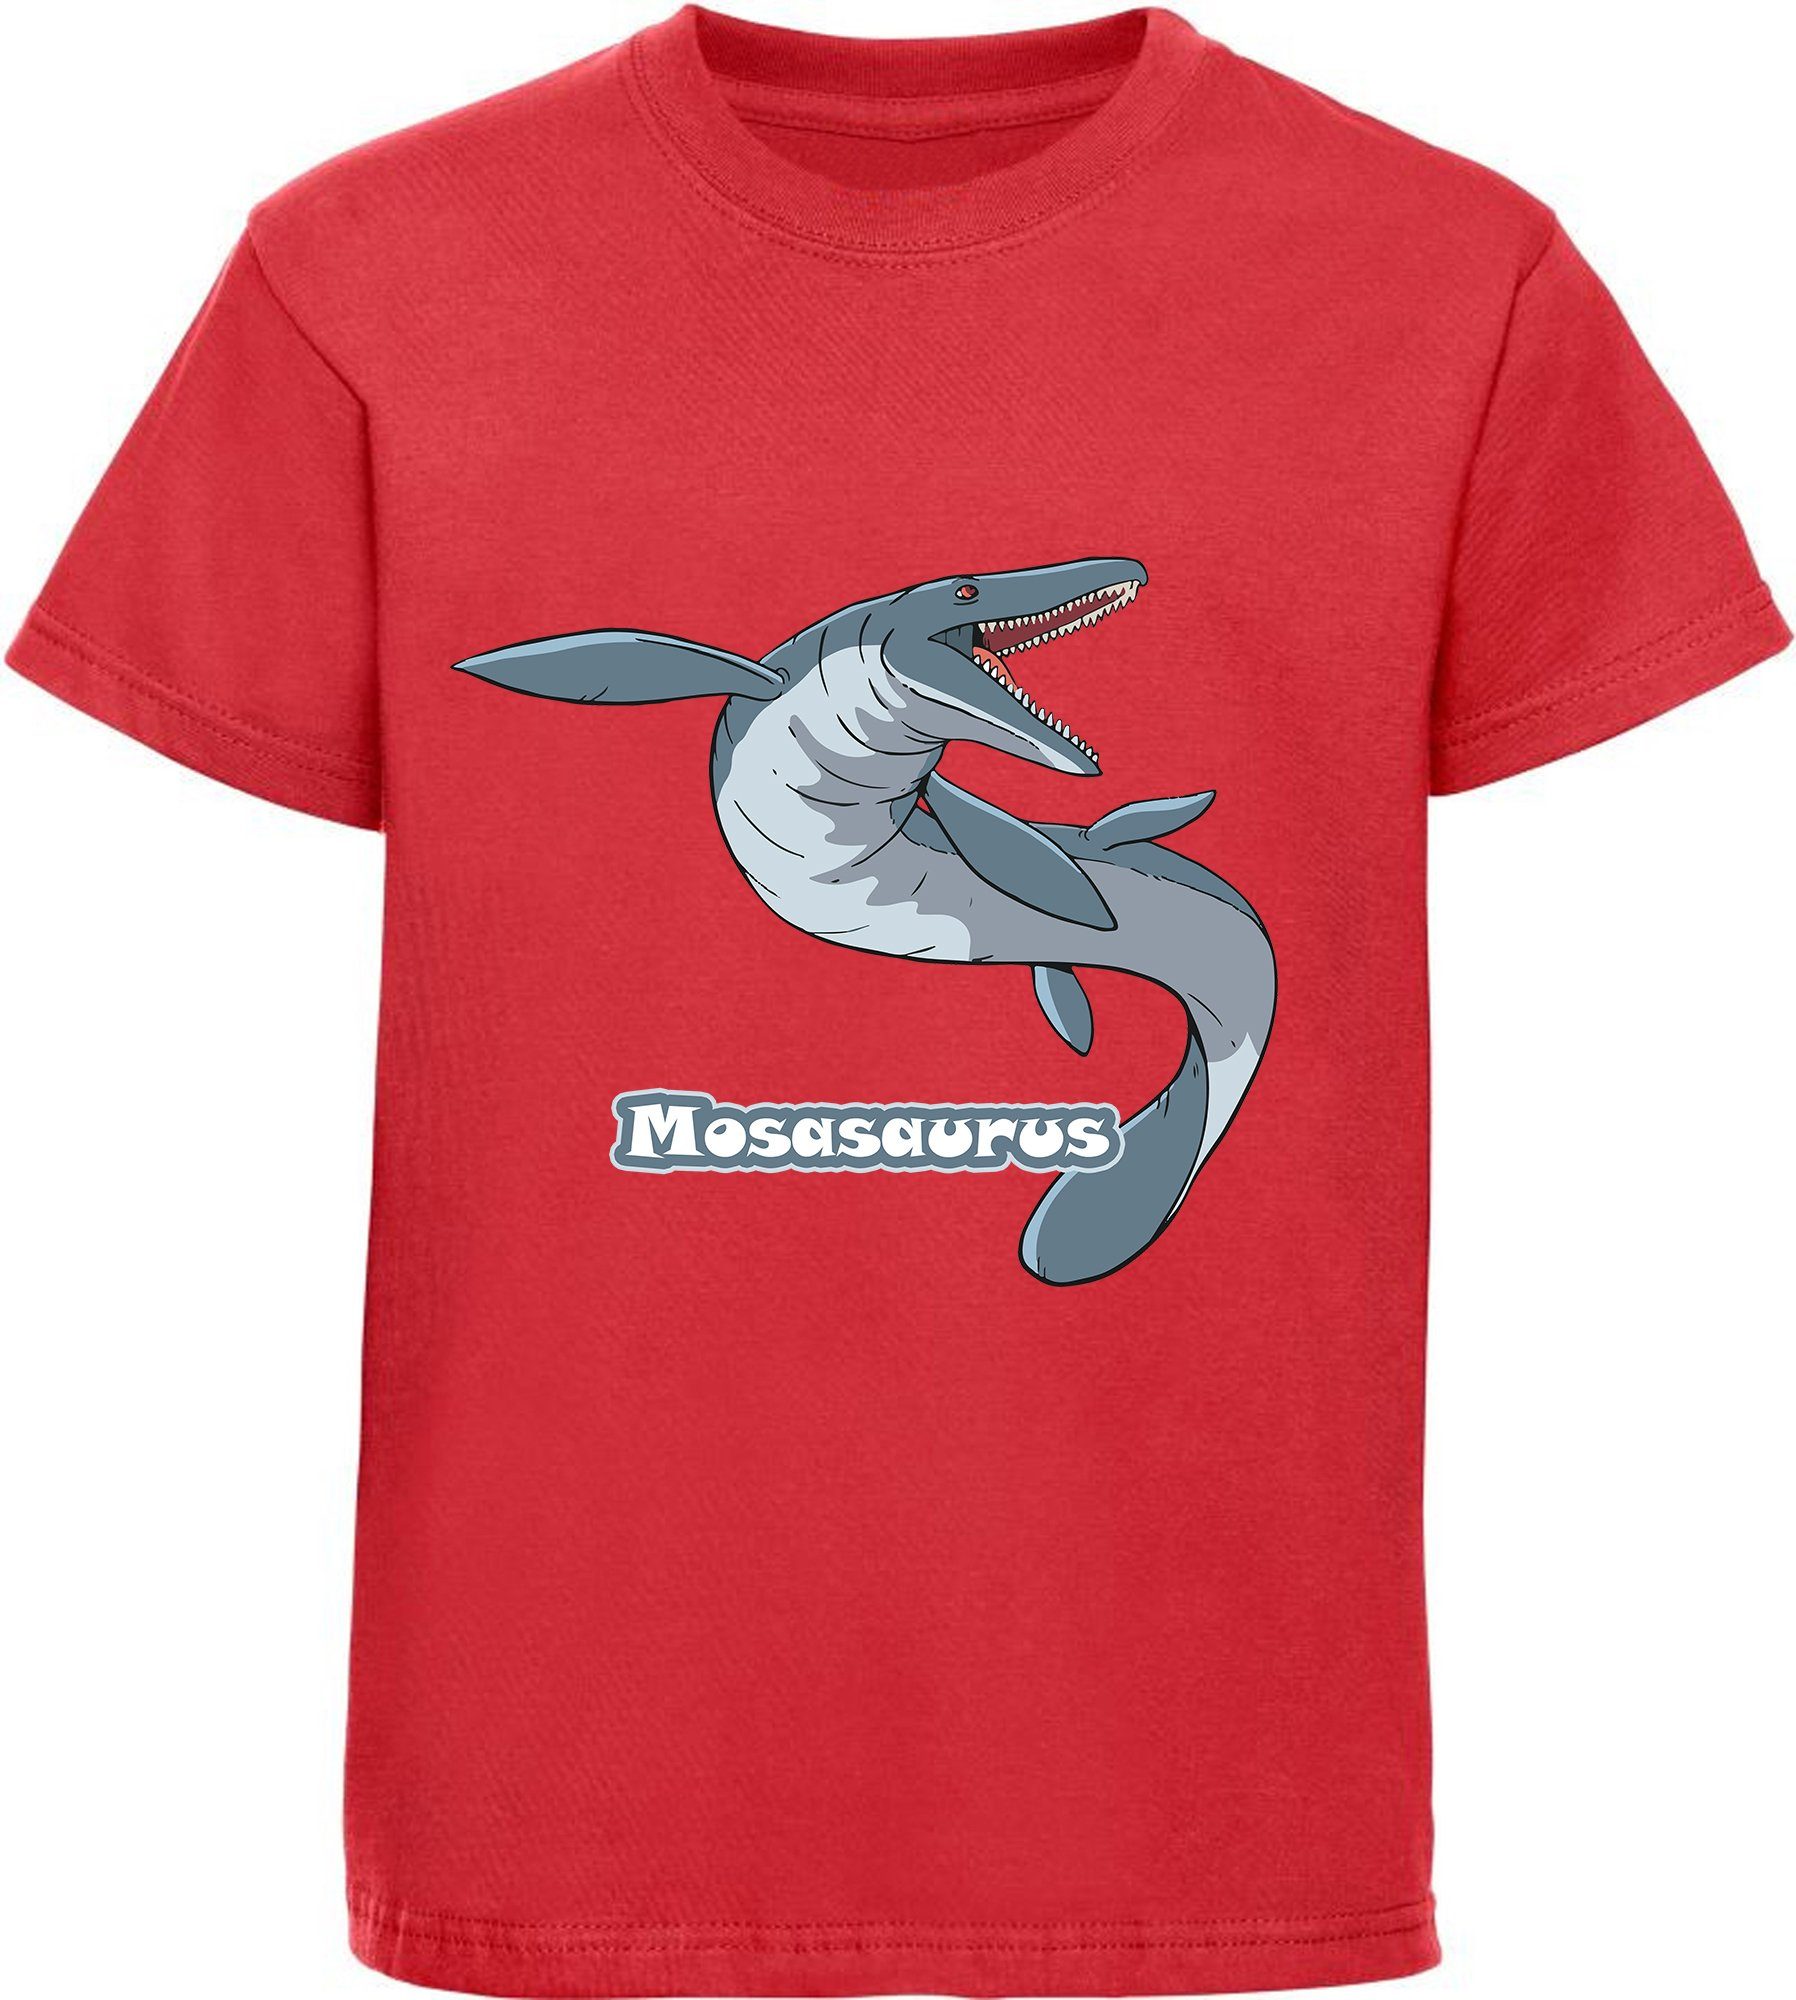 Kinder bedrucktes rot Aufdruck, Baumwolle T-Shirt 100% MyDesign24 T-Shirt mit Dino i51 mit Mosasaurus